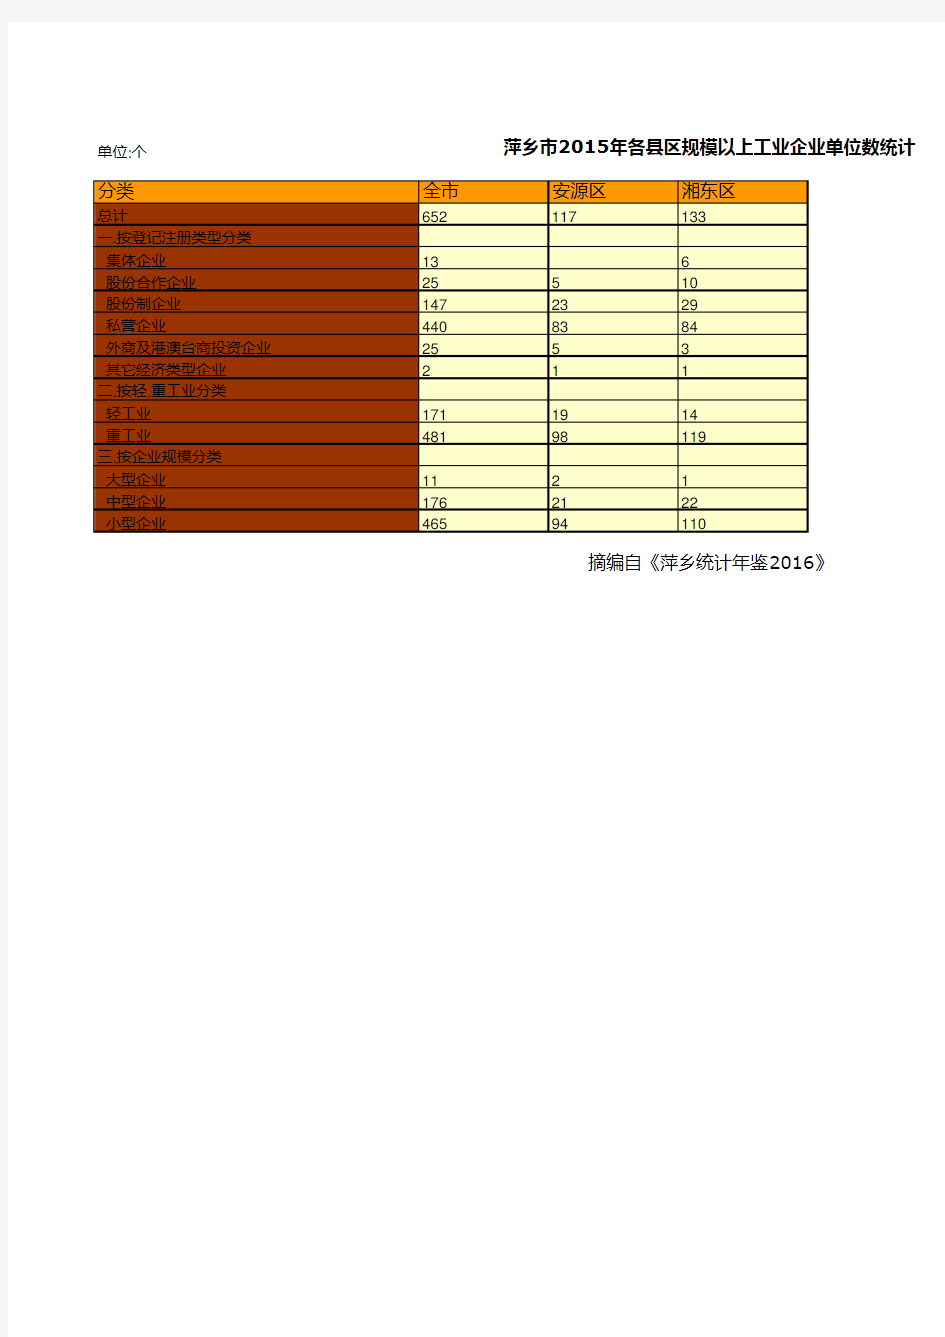 萍乡市2015年各县区规模以上工业企业单位数统计